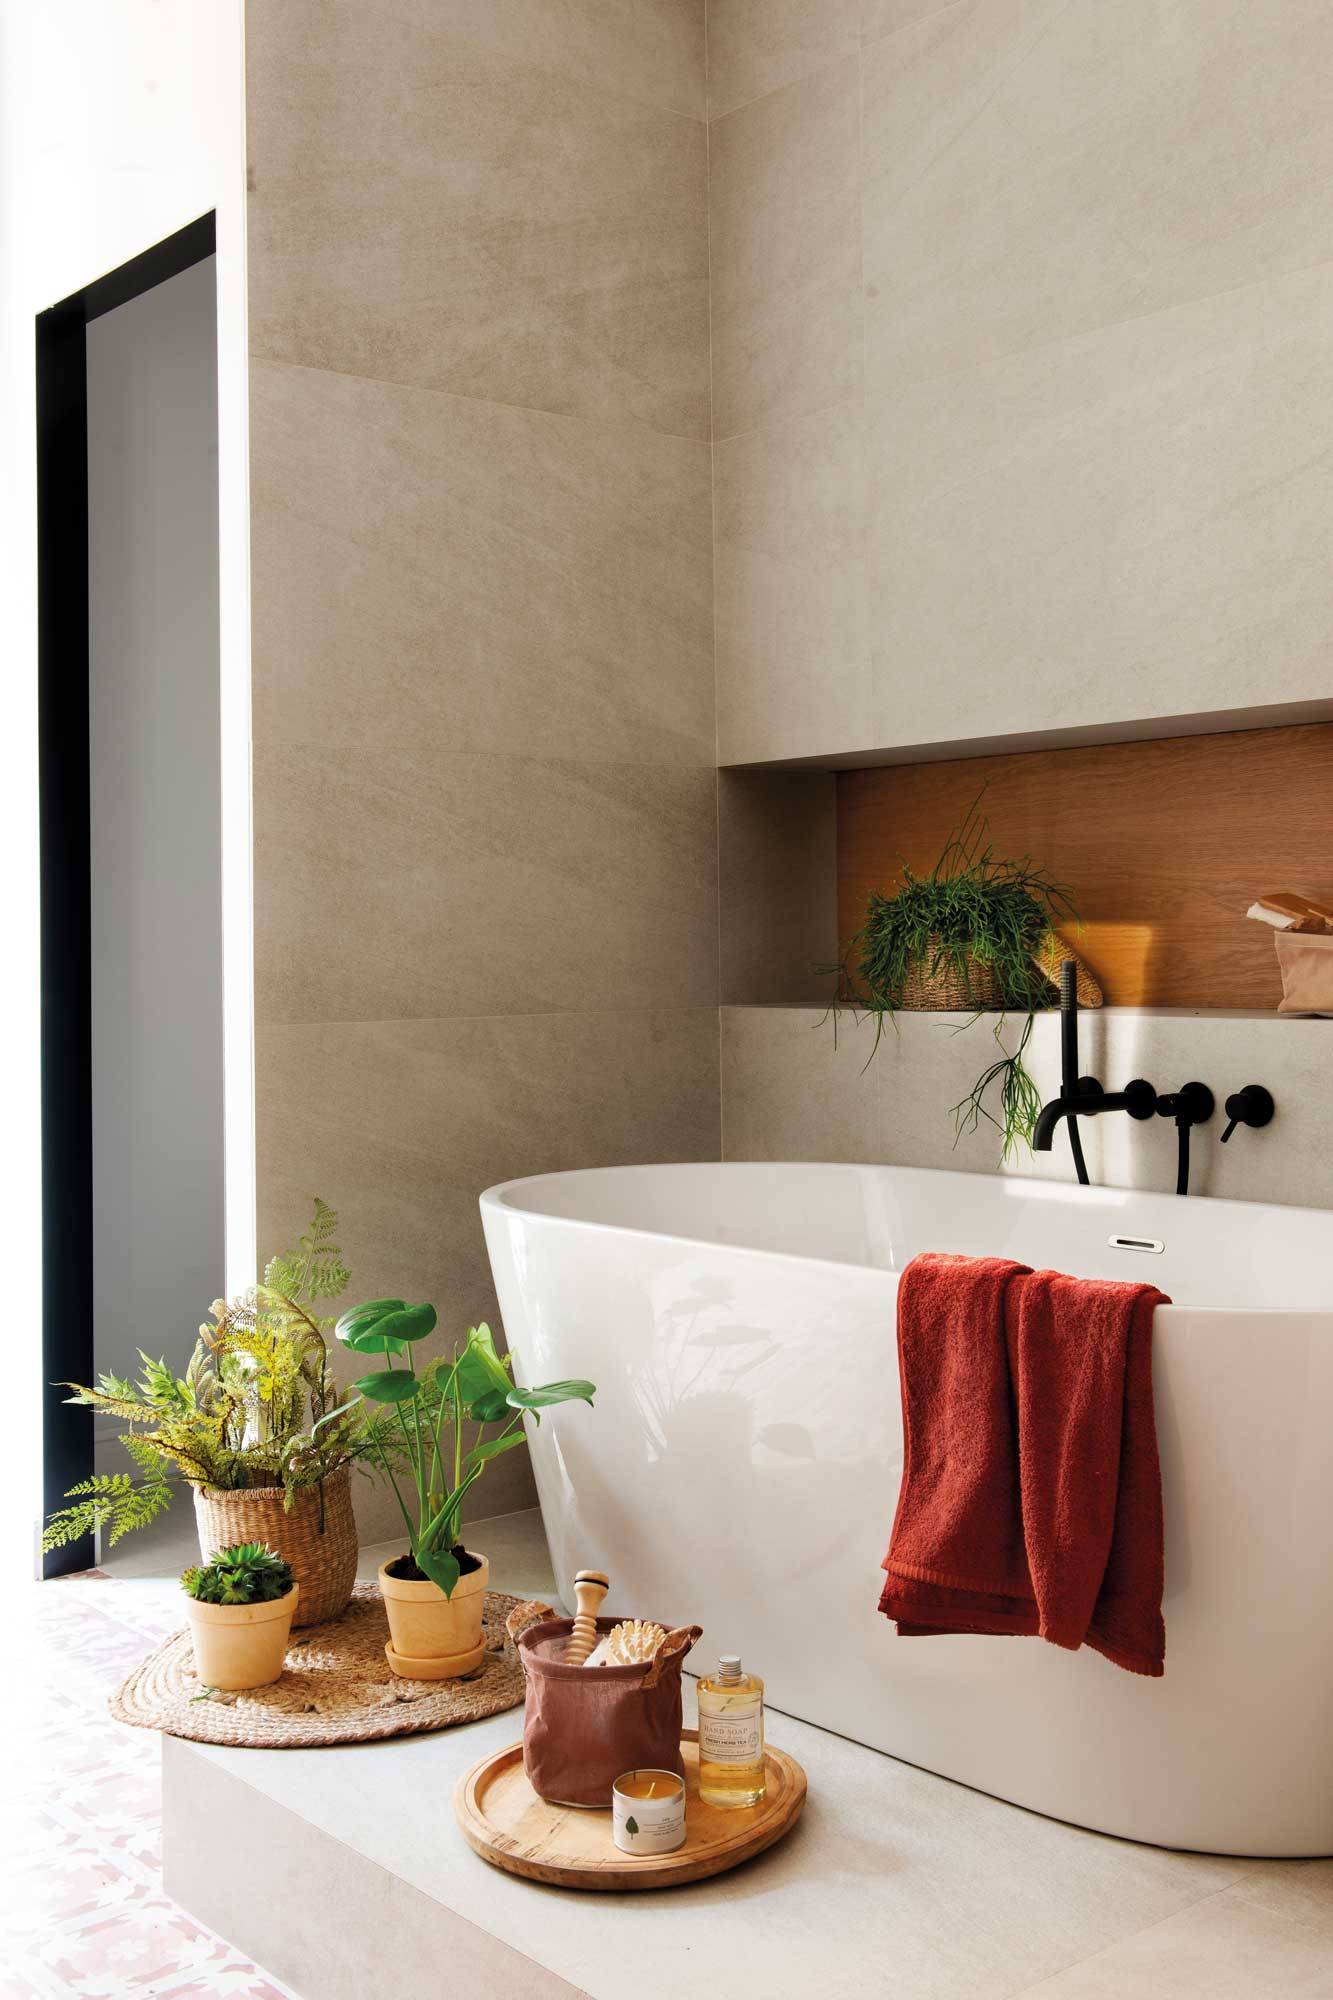 Baño moderno con bañera exenta sobre un escalón.